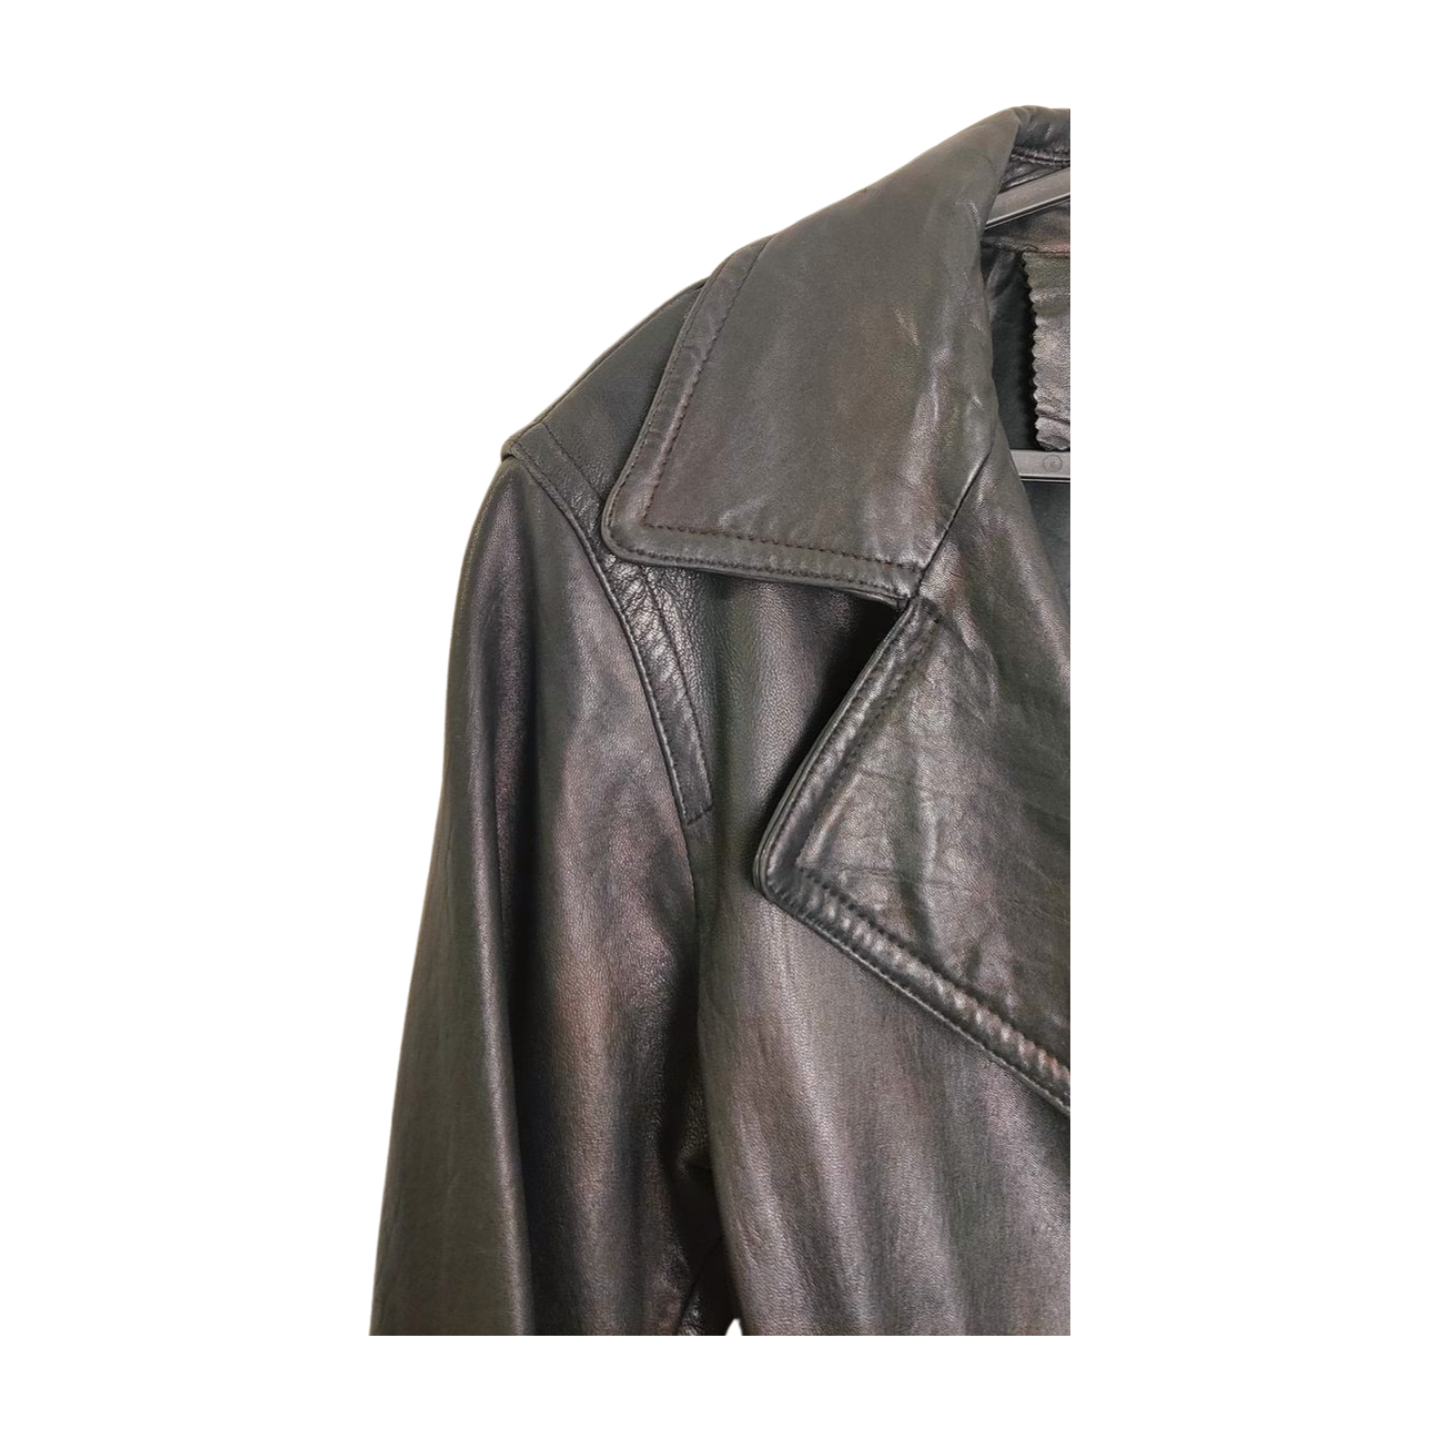 Vintage Studio Siena Leather Jacket